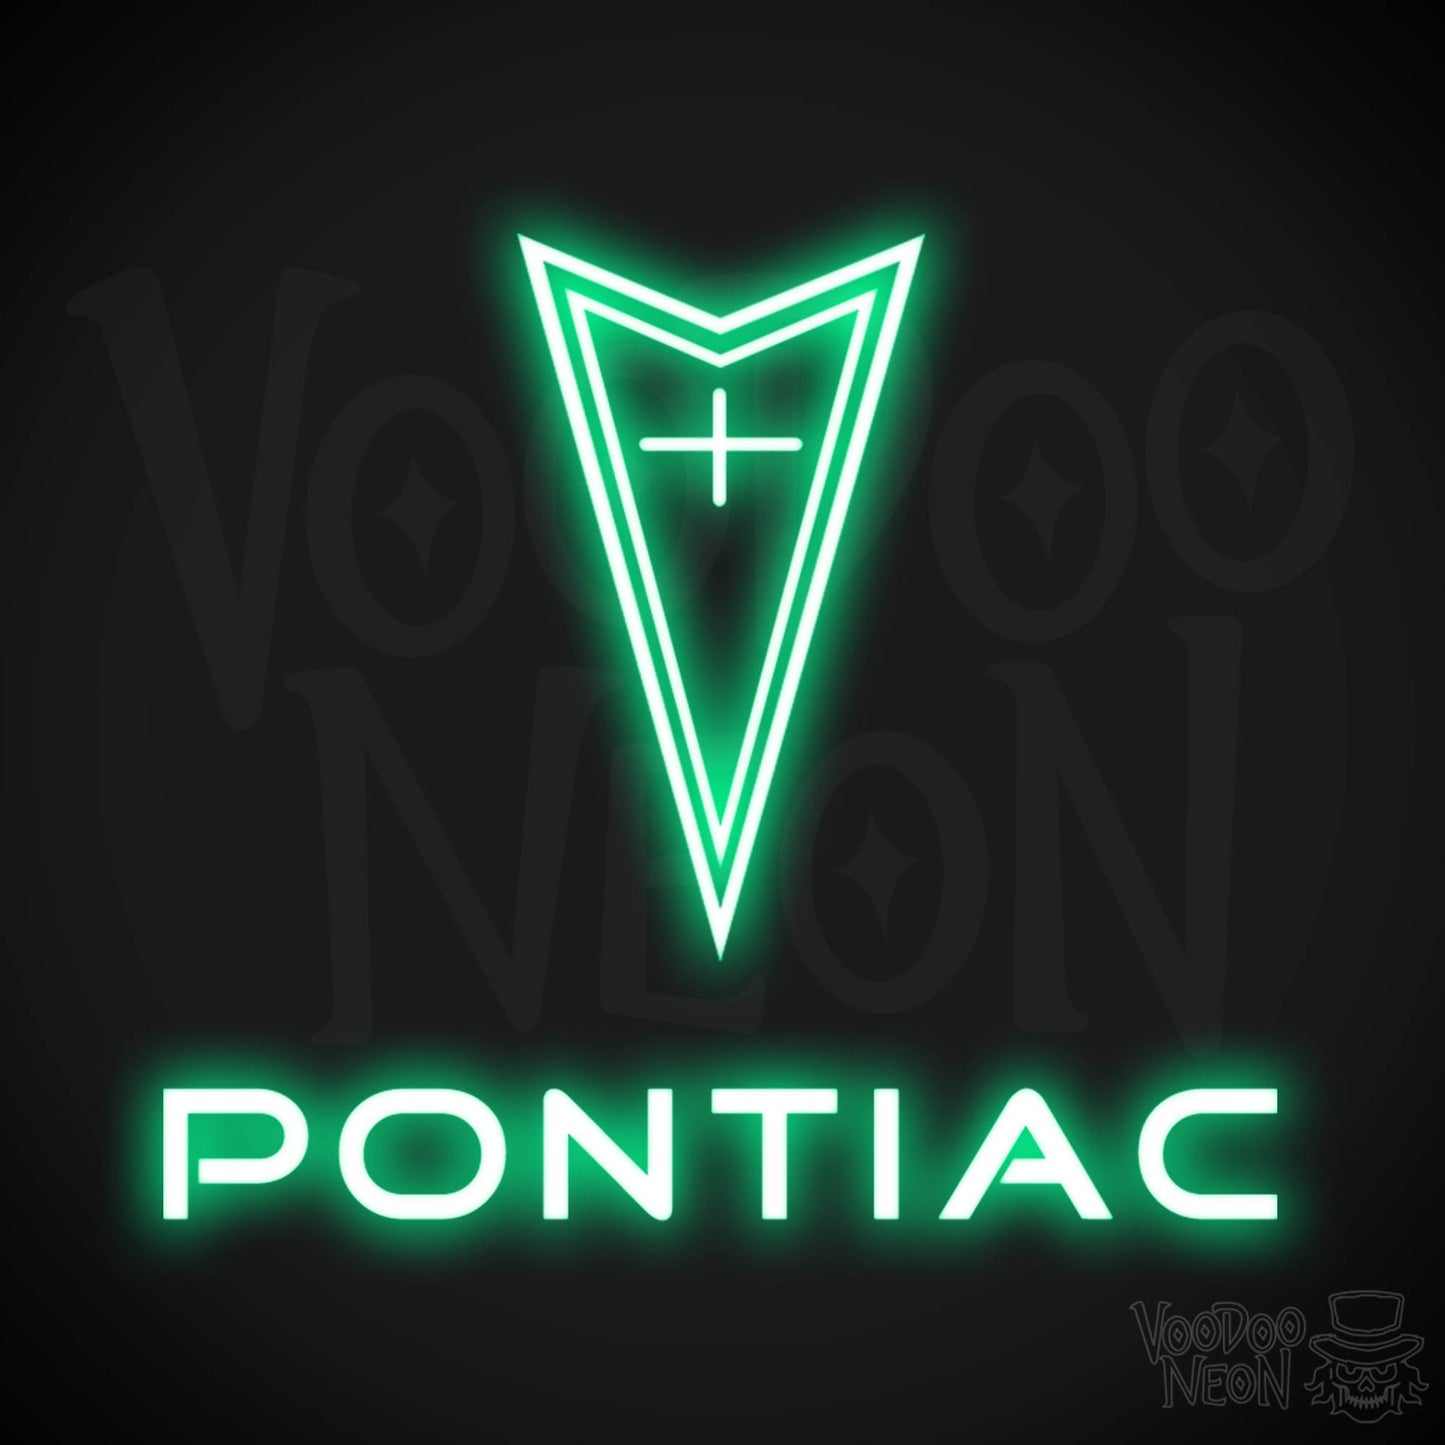 Pontiac Neon Sign - Pontiac Sign - Pontiac Decor - Wall Art - Color Green